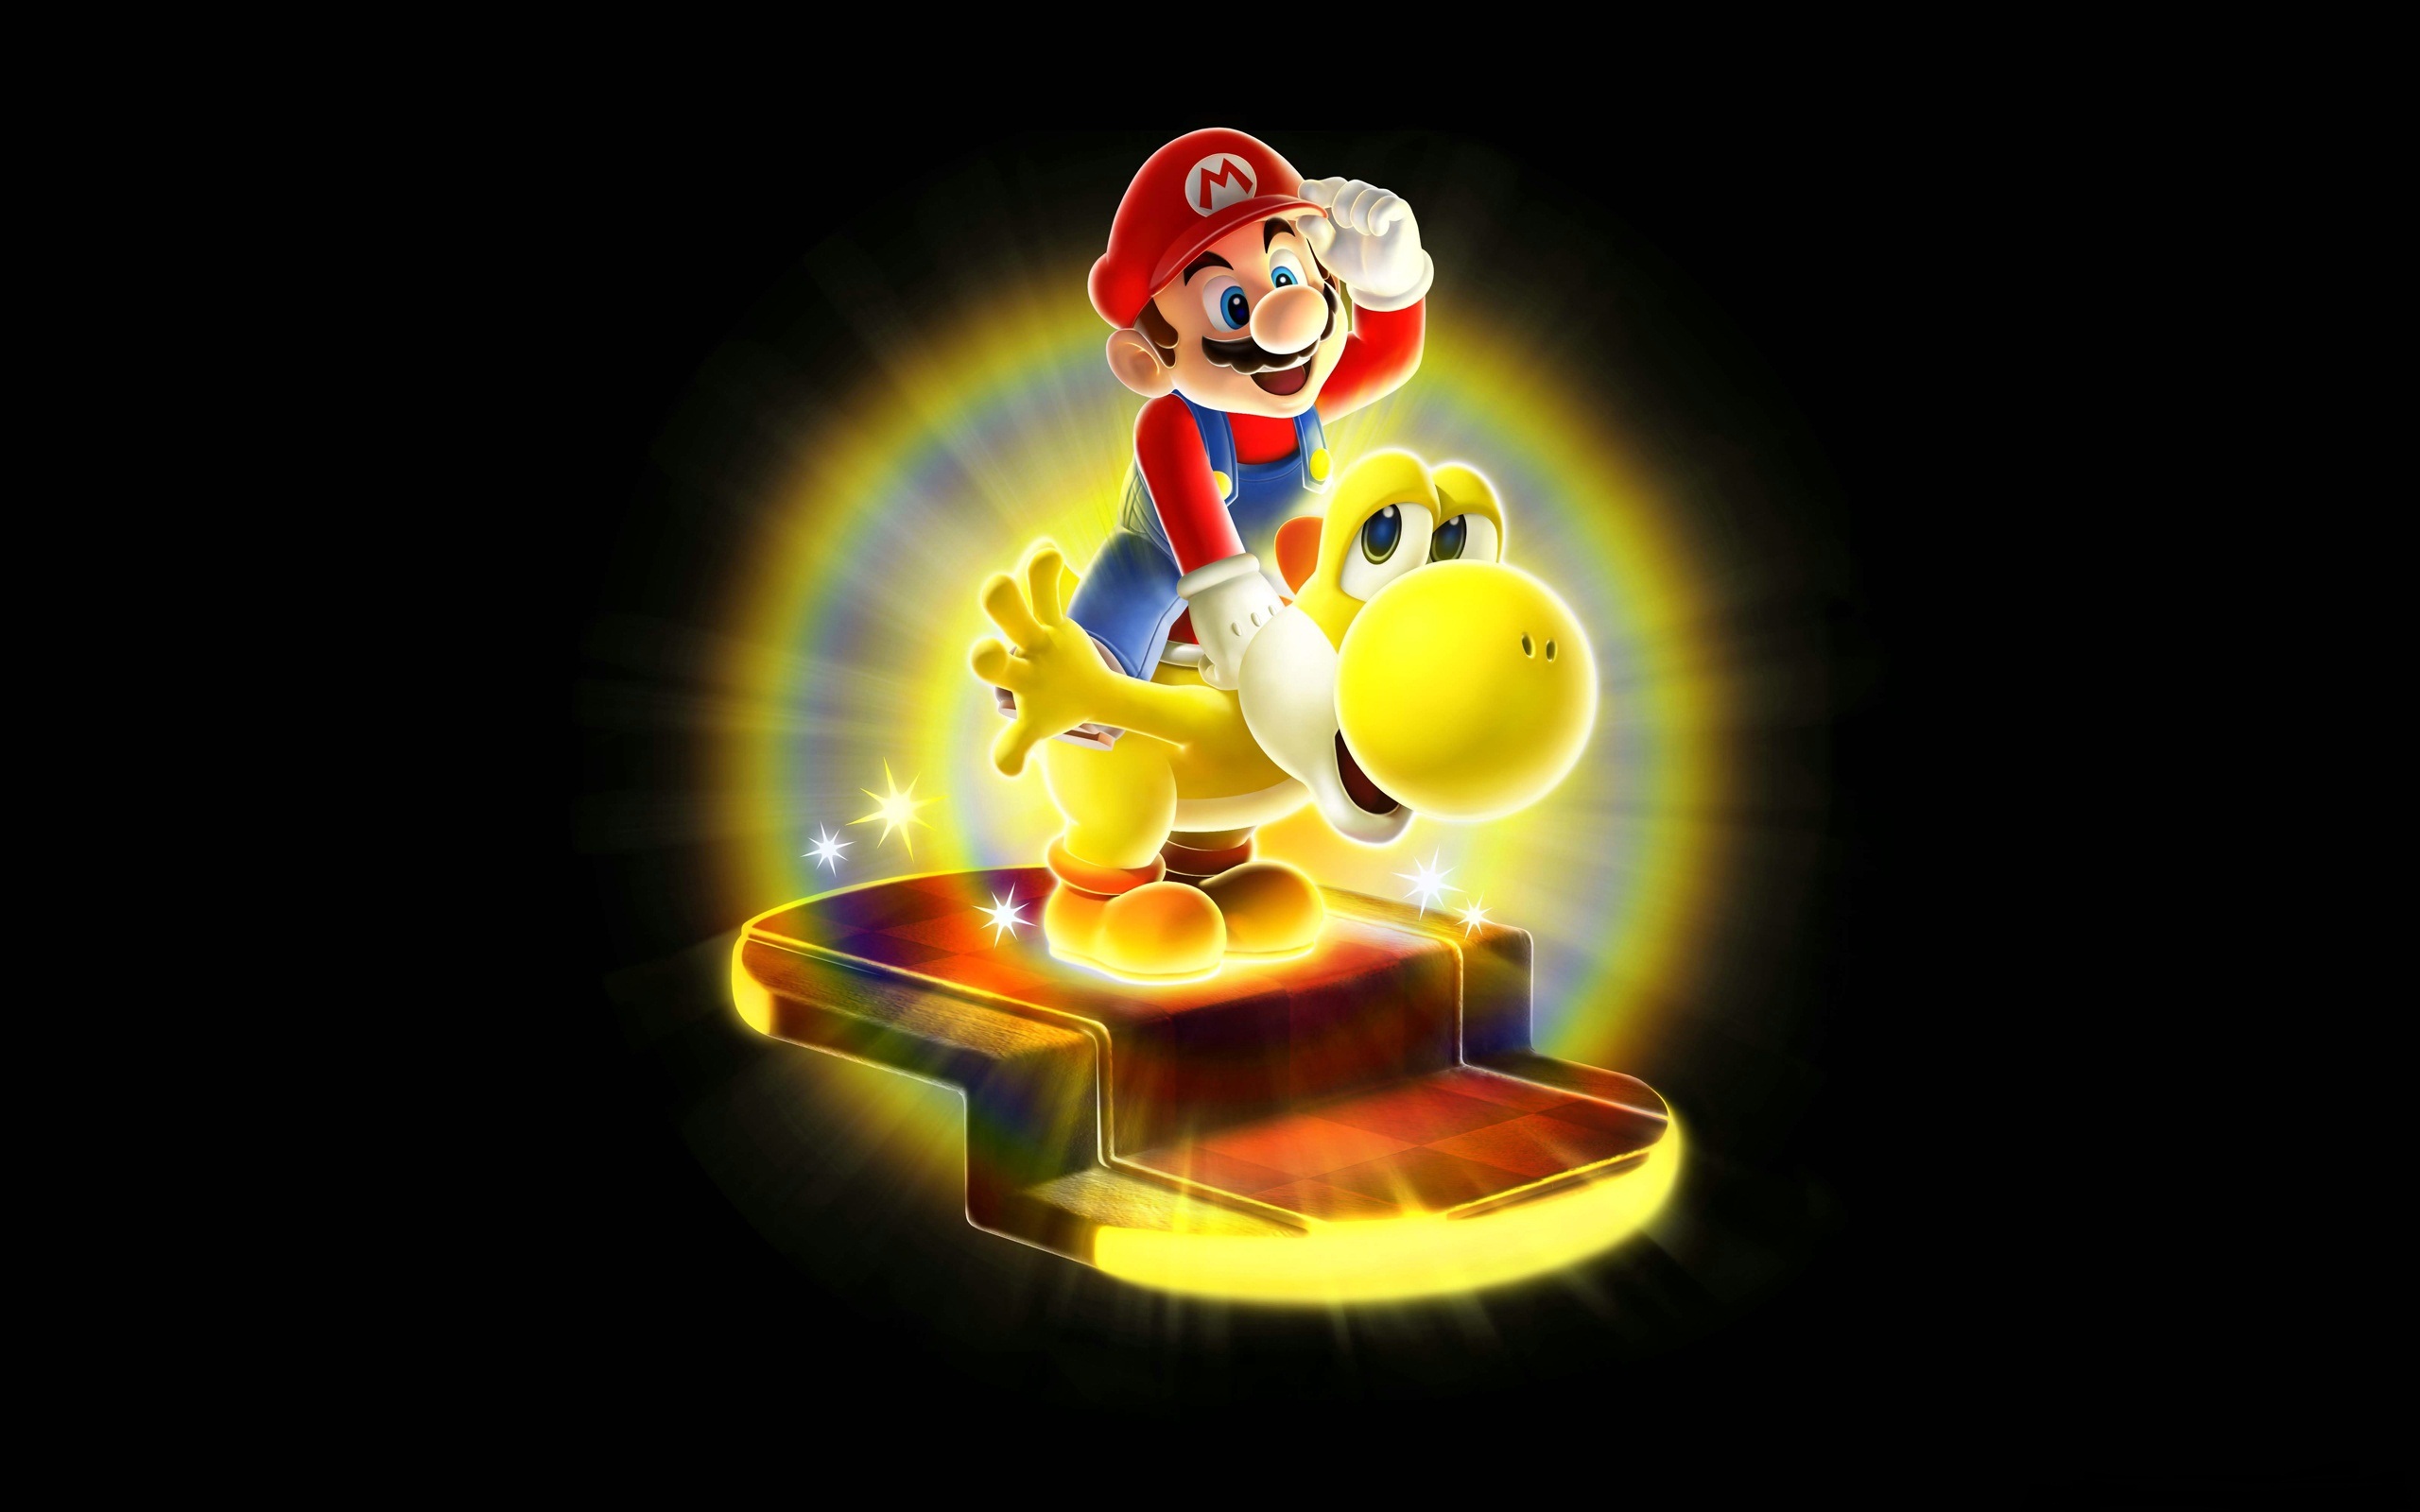 Yoshi Mario Super Mario Galaxy 2560x1600